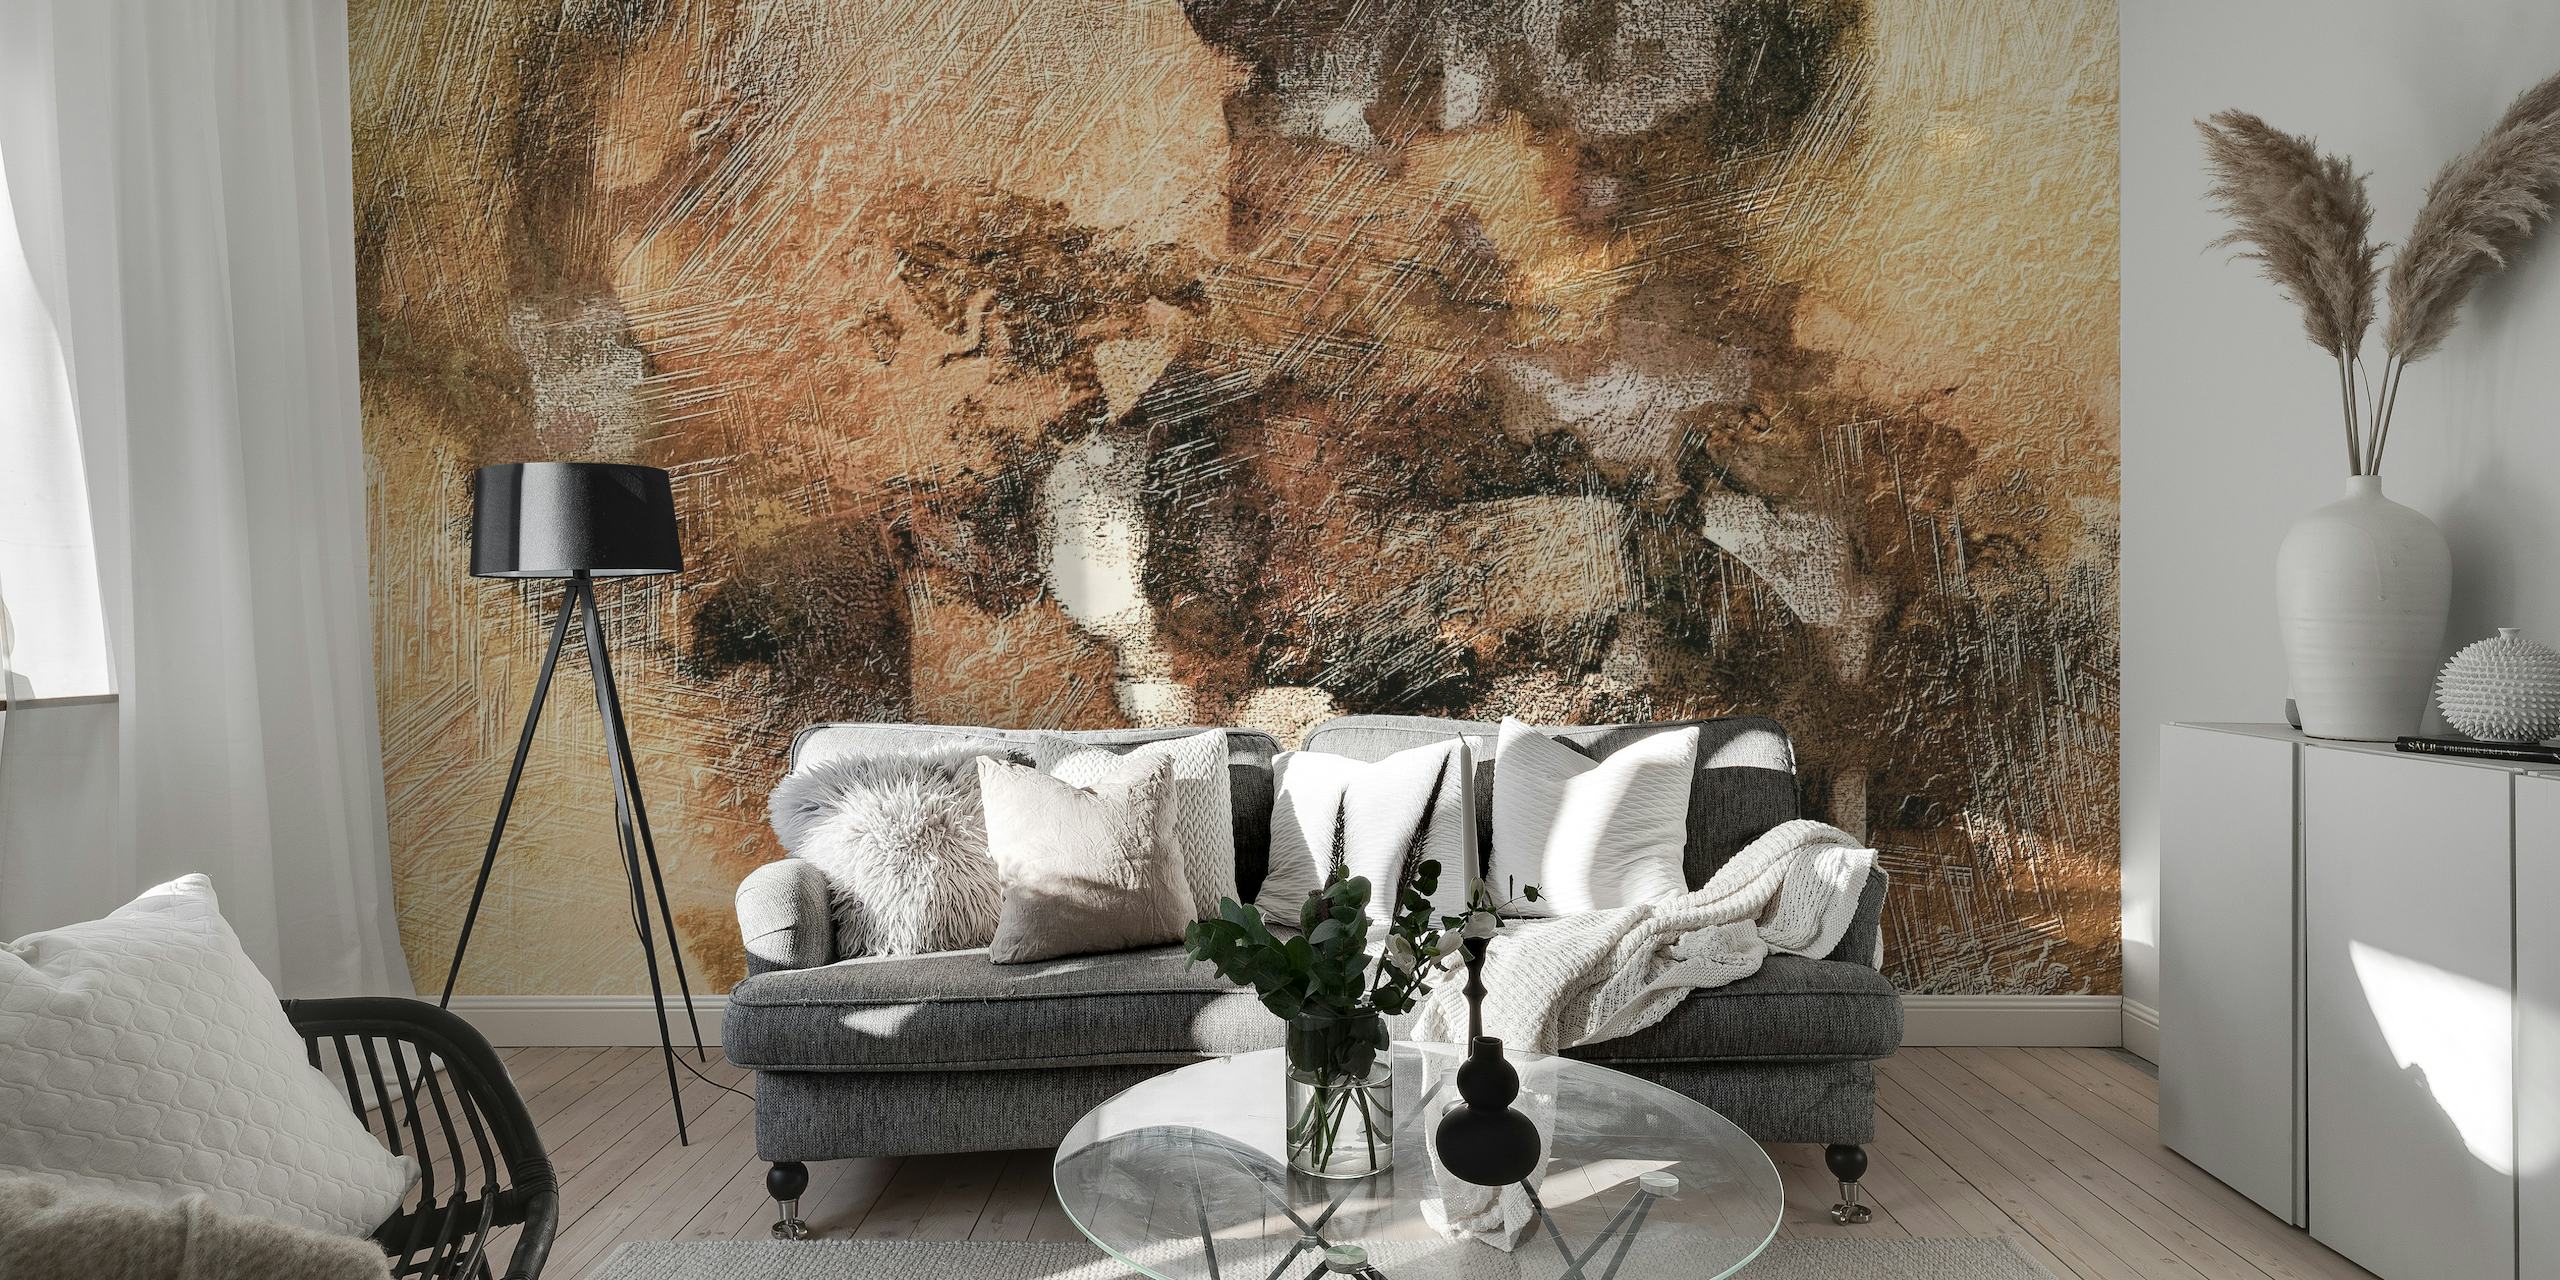 Decorazione murale astratta in metallo caldo con toni terrosi e metallici in un design materico